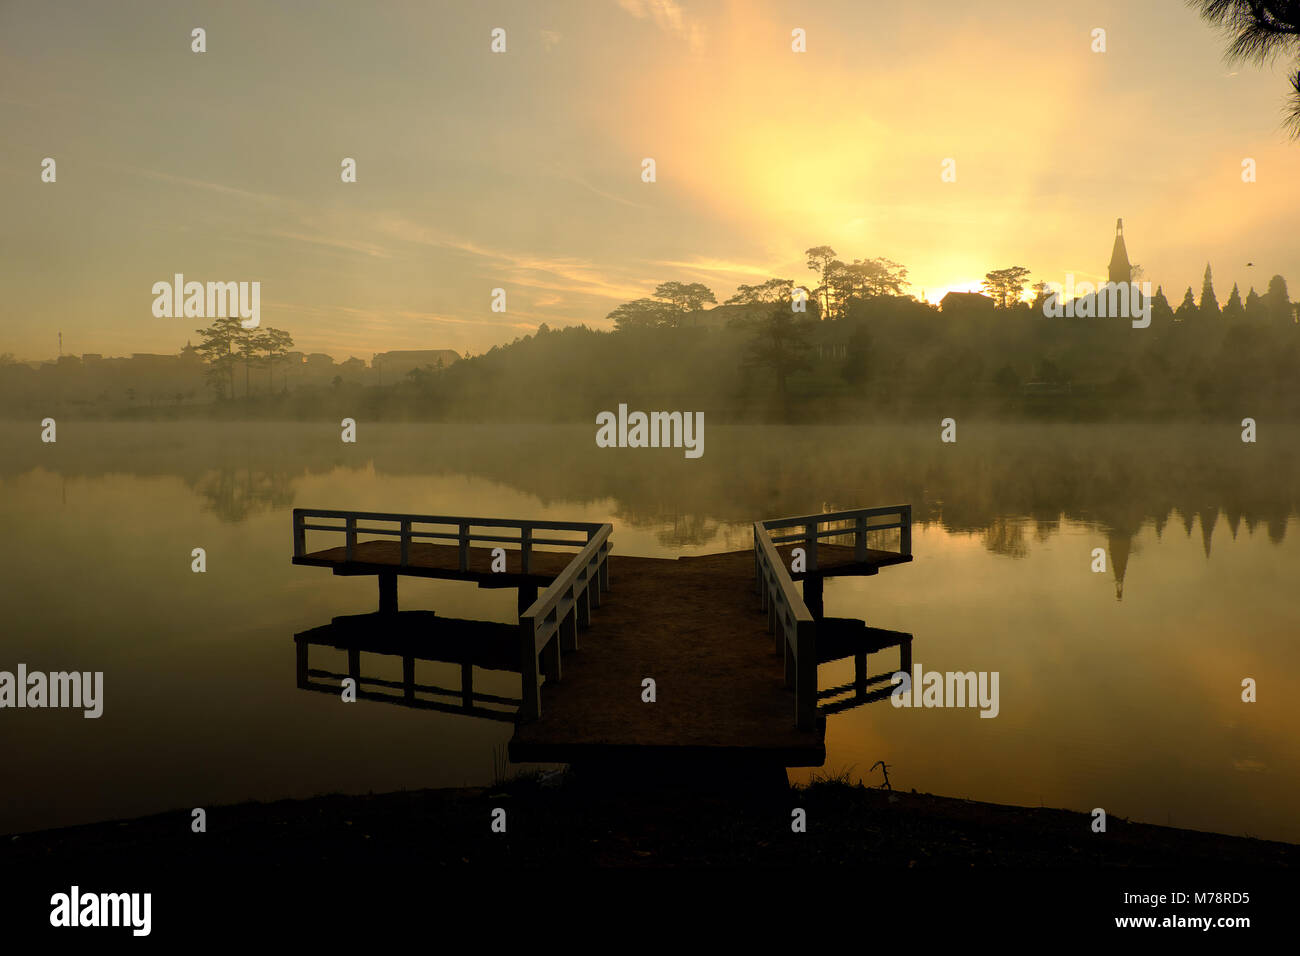 Destination de Voyage Vietnam à Da Nang city, le brouillard s'évaporer de l'eau de surface du lac, silhouette de petit pont réfléchir sur l'étang, belle au lever du soleil Banque D'Images